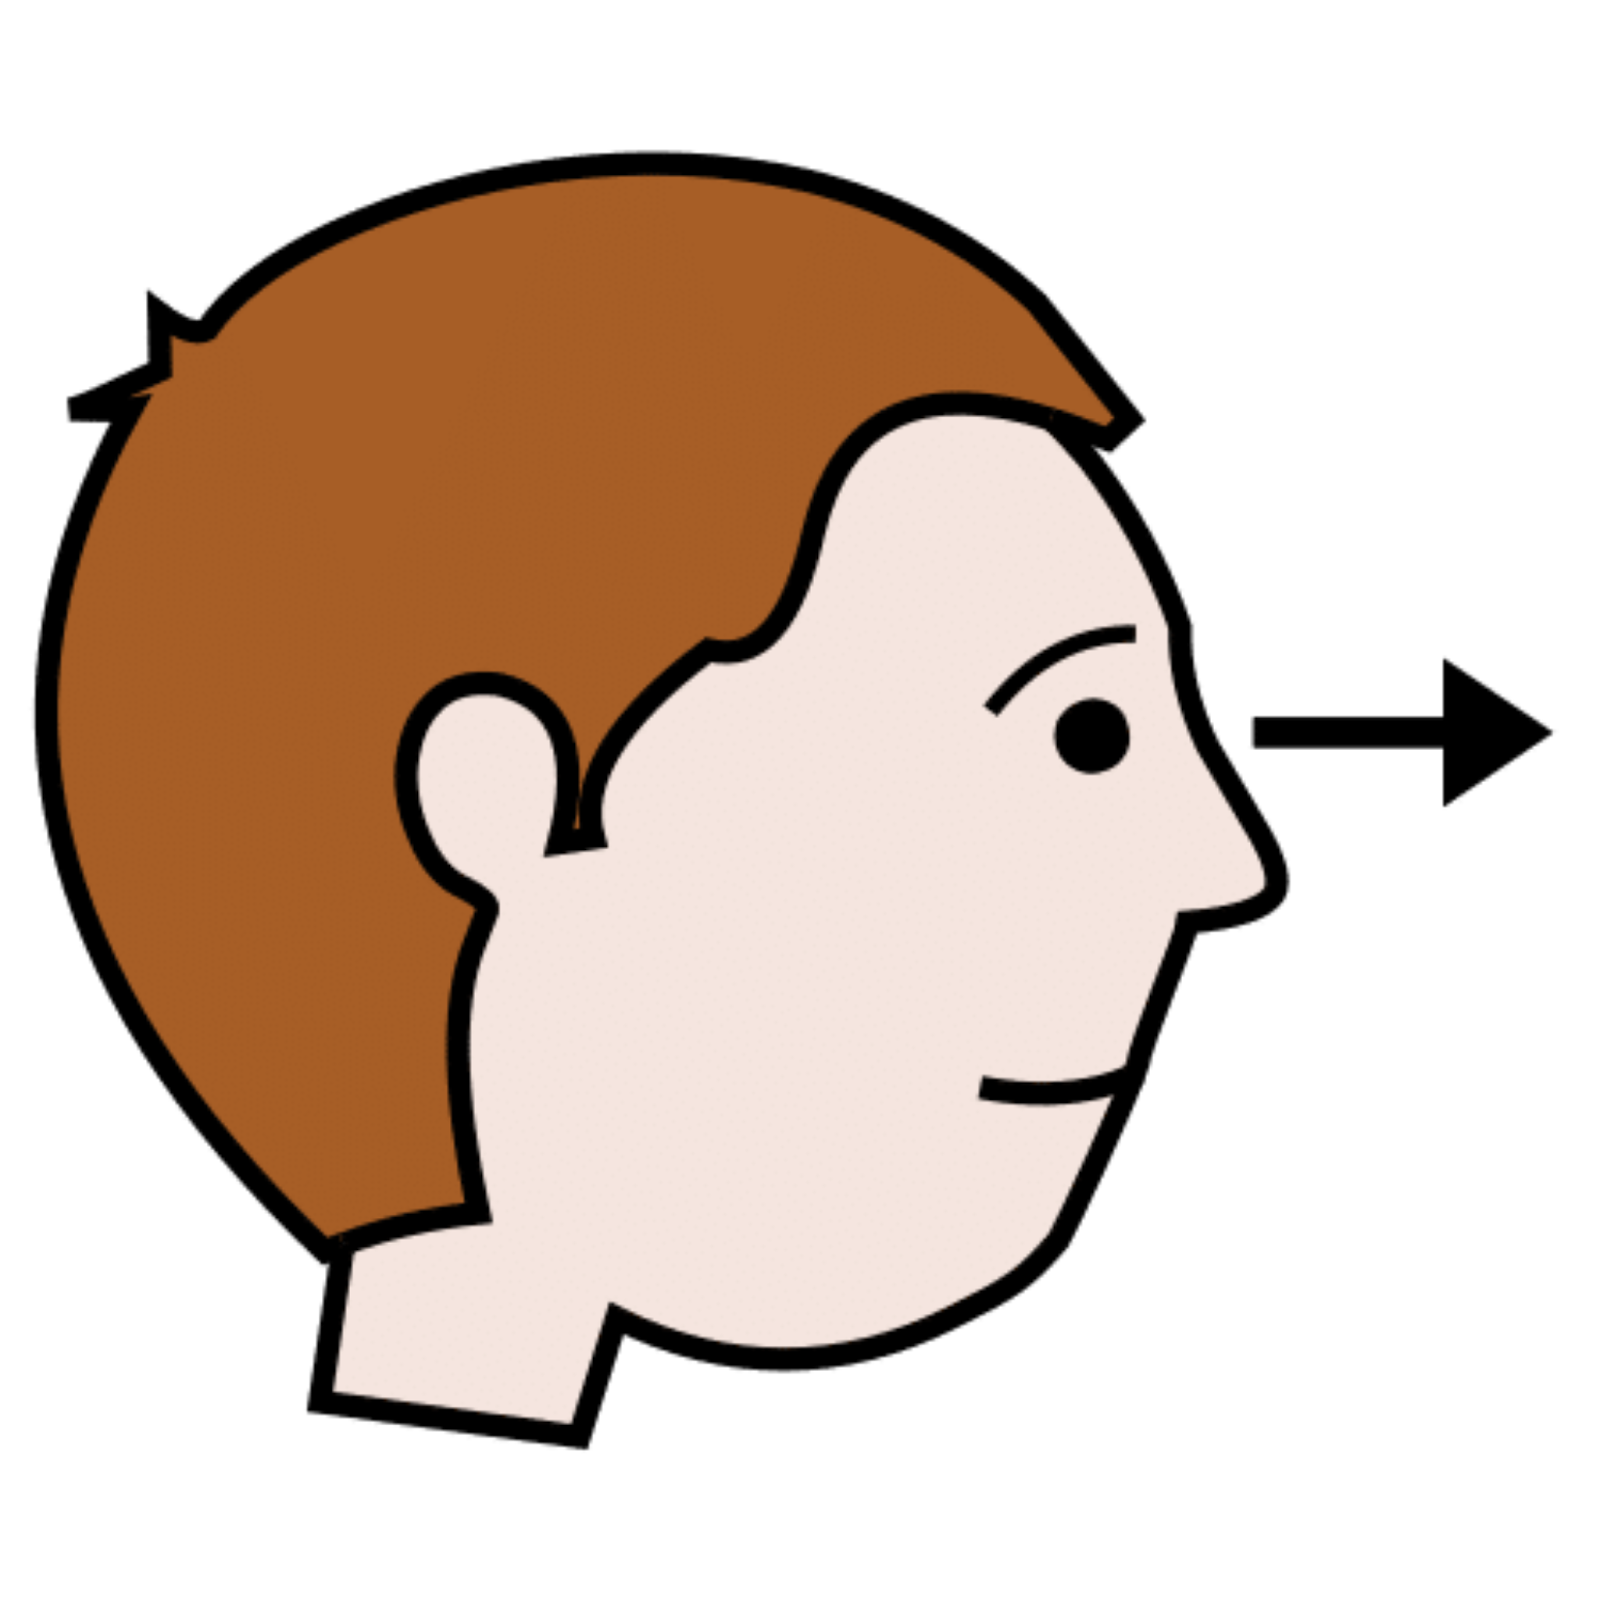 La imagen muestra a una persona de perfil con una flecha hacia la derecha a la altura de los ojos.